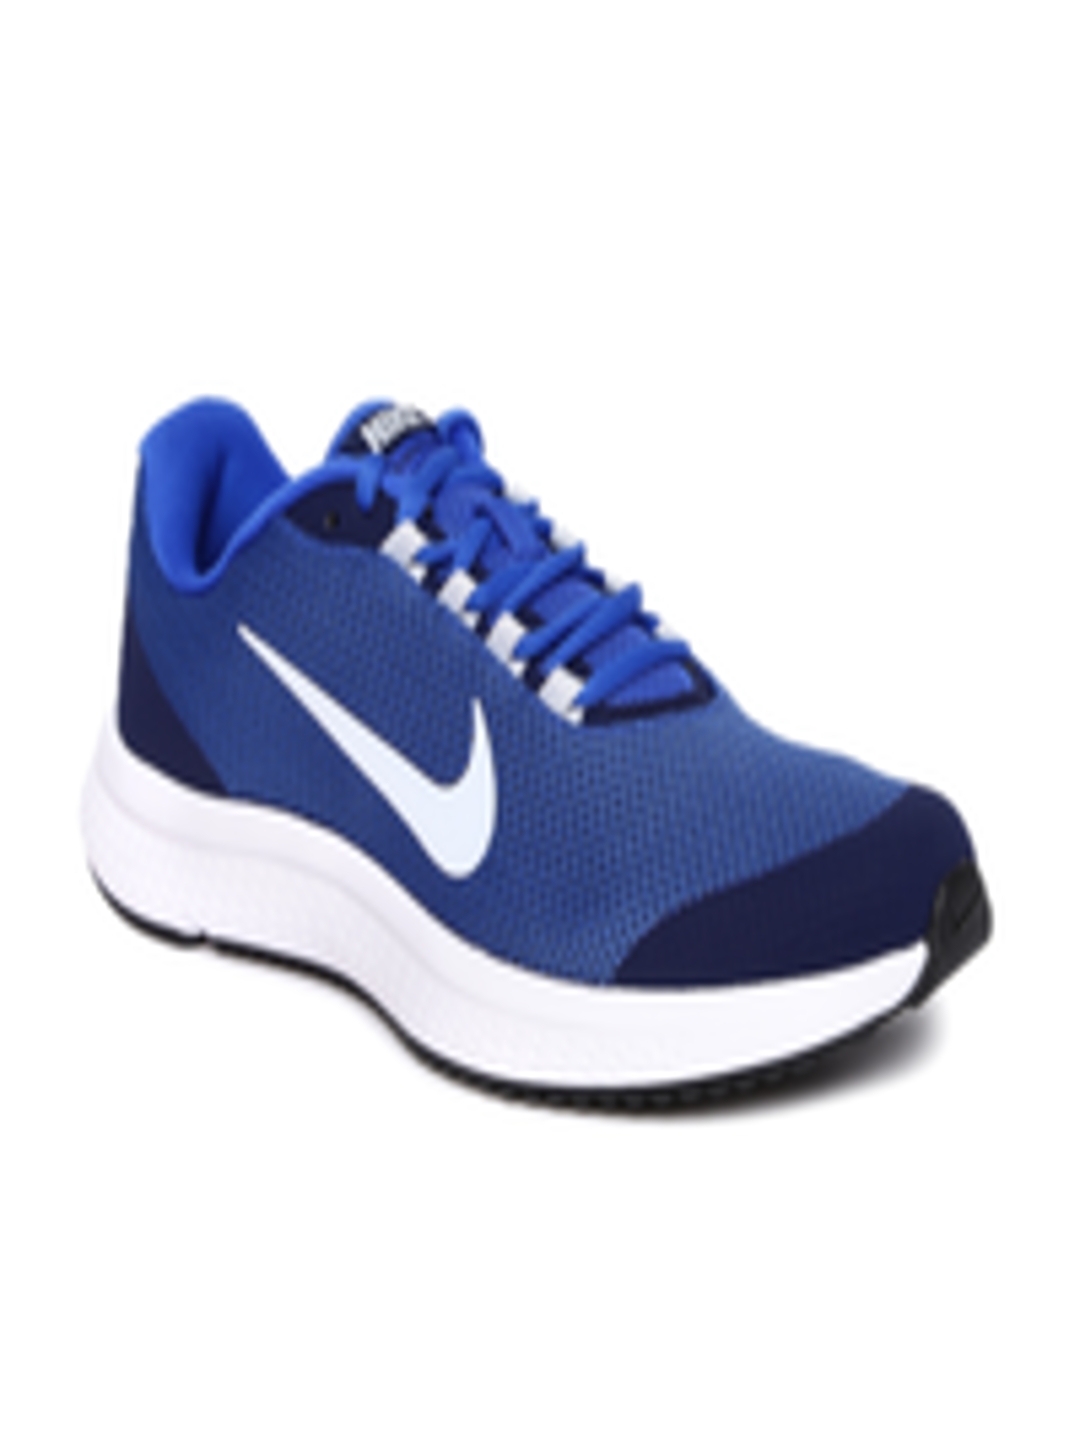 Buy Nike Men Blue RUNALLDAY Running Shoes Sports Shoes